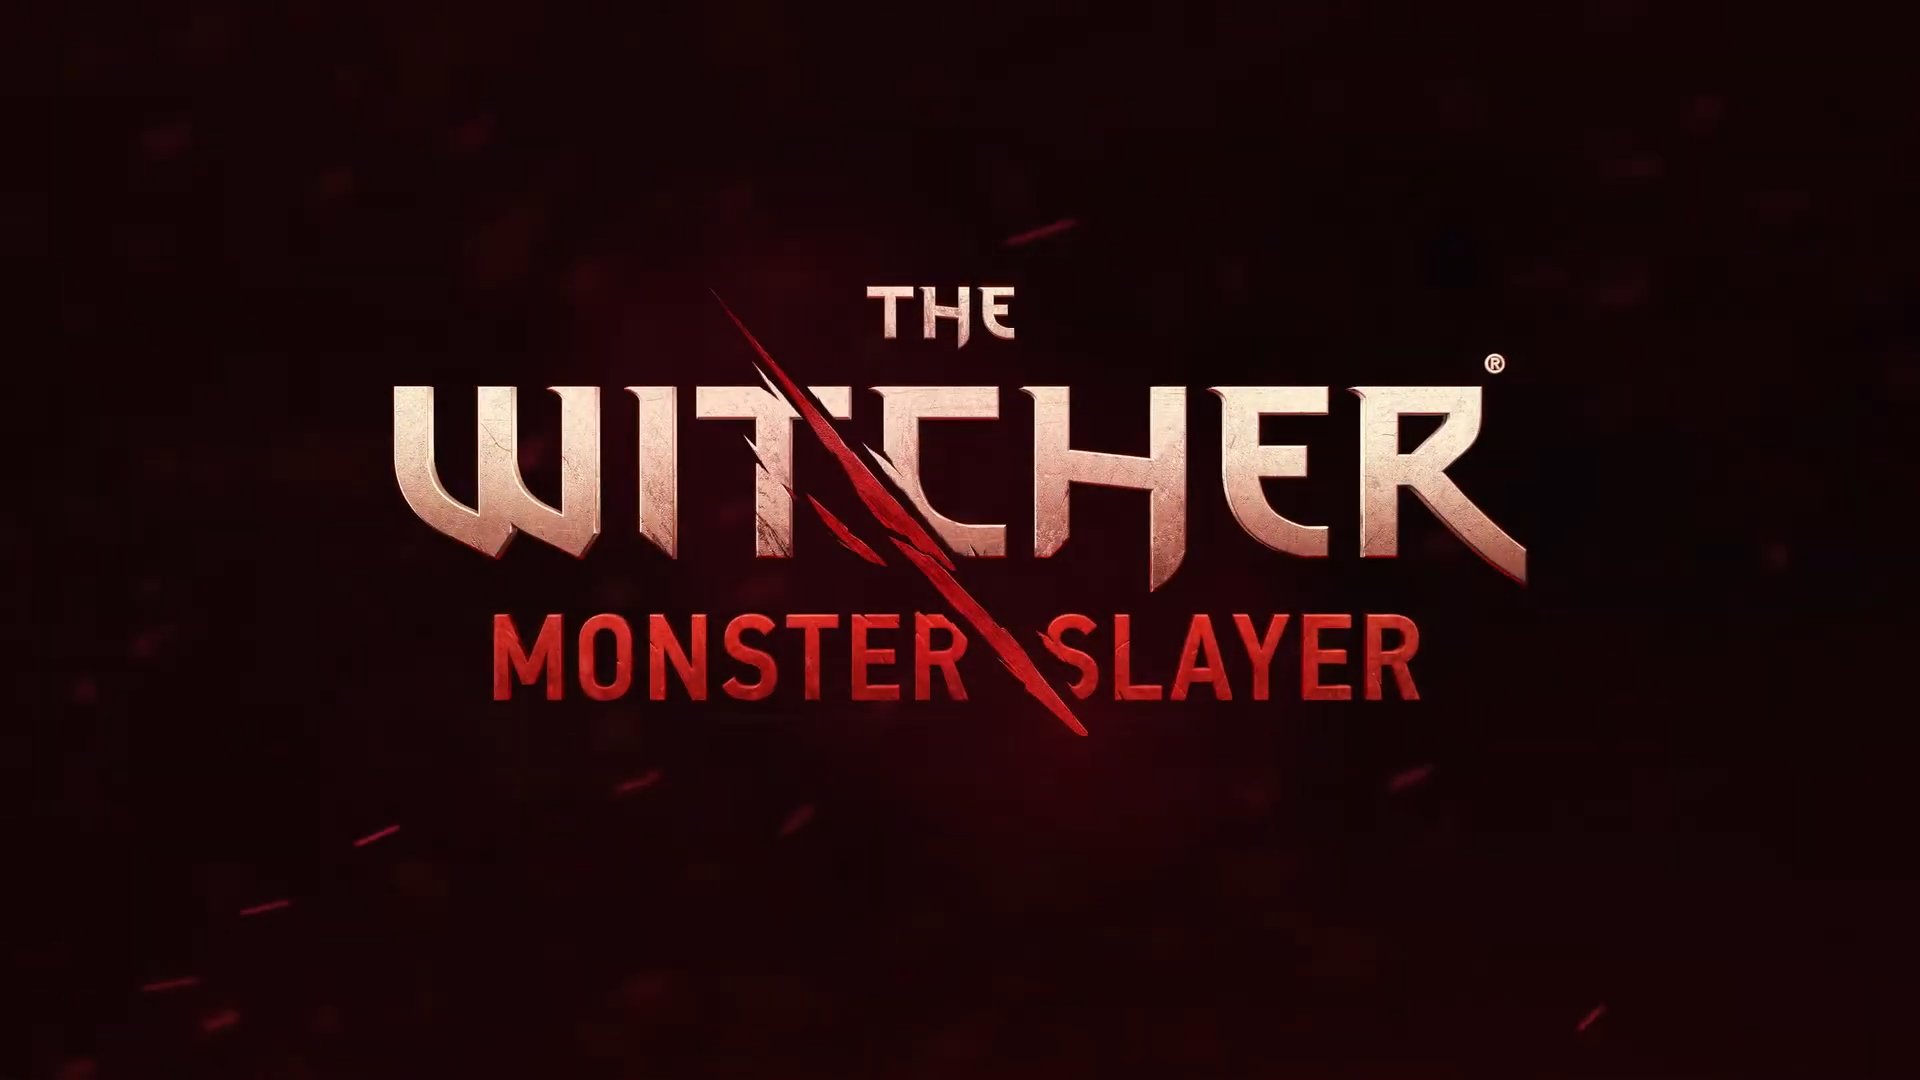 The Witcher : un jeu en réalité augmentée à la Pokémon Go annoncé